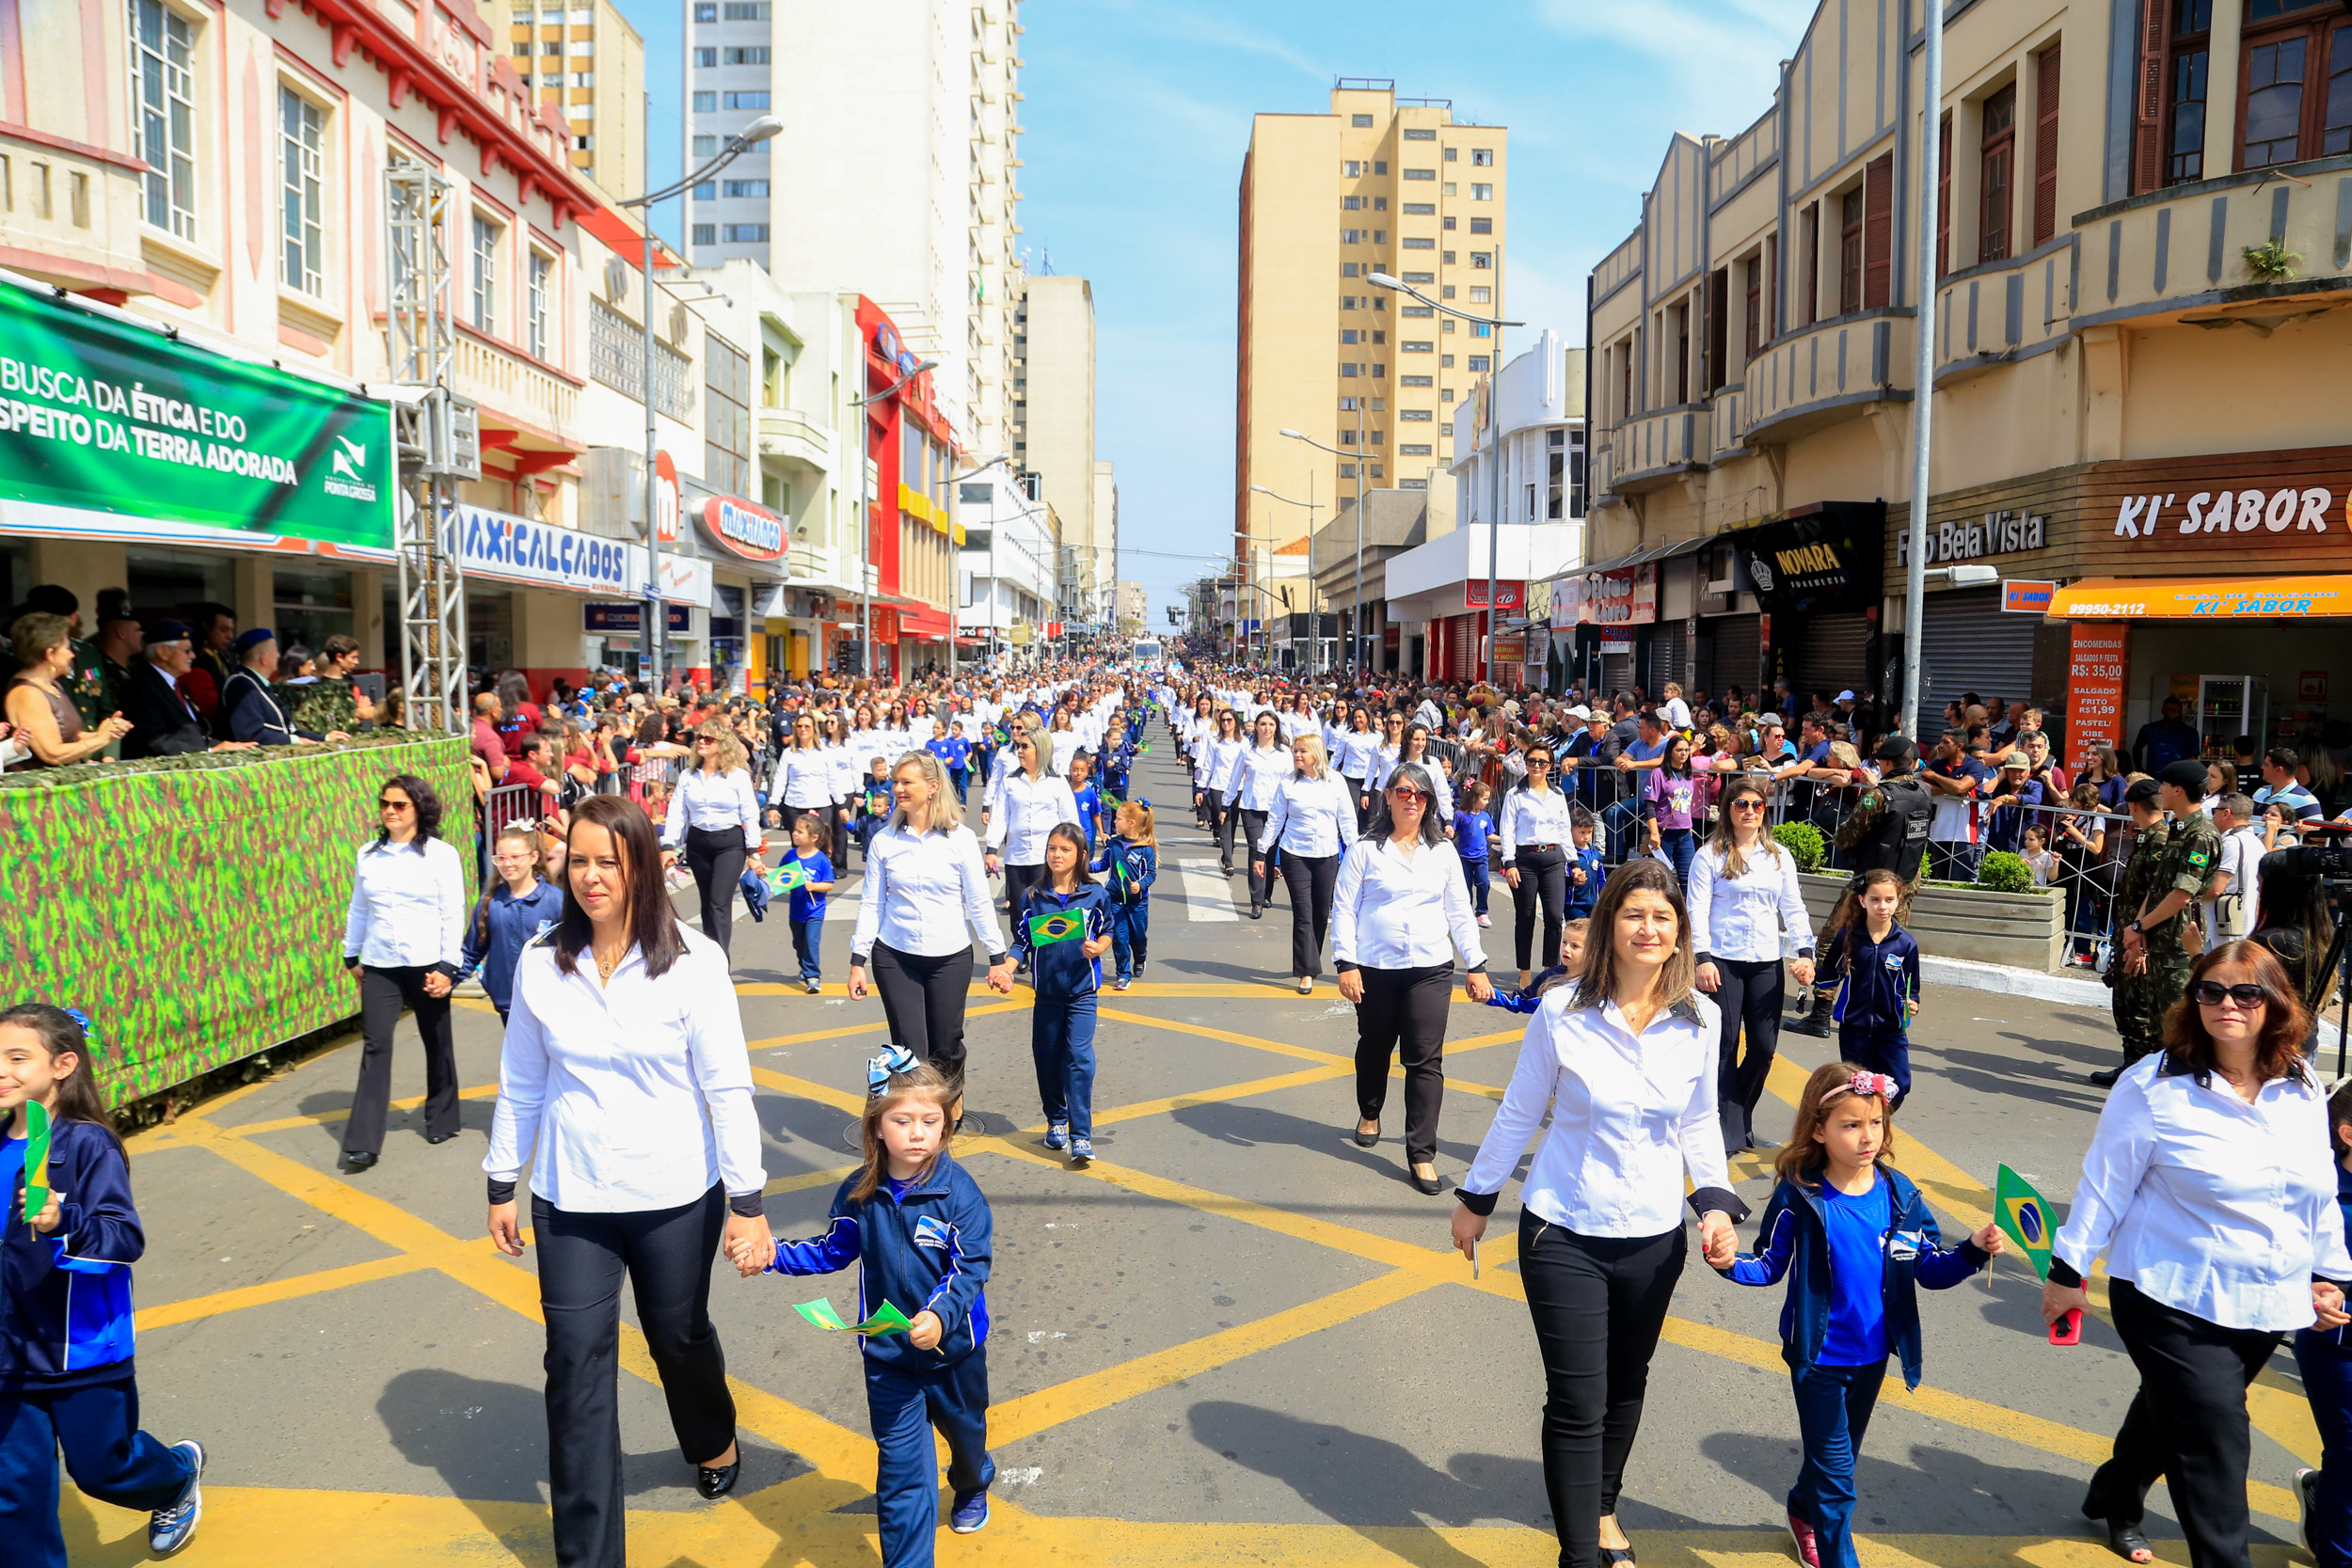 Desfile dos 196 anos de PG deve levar quase 30 mil pessoas à 'Av. Vicente Machado'